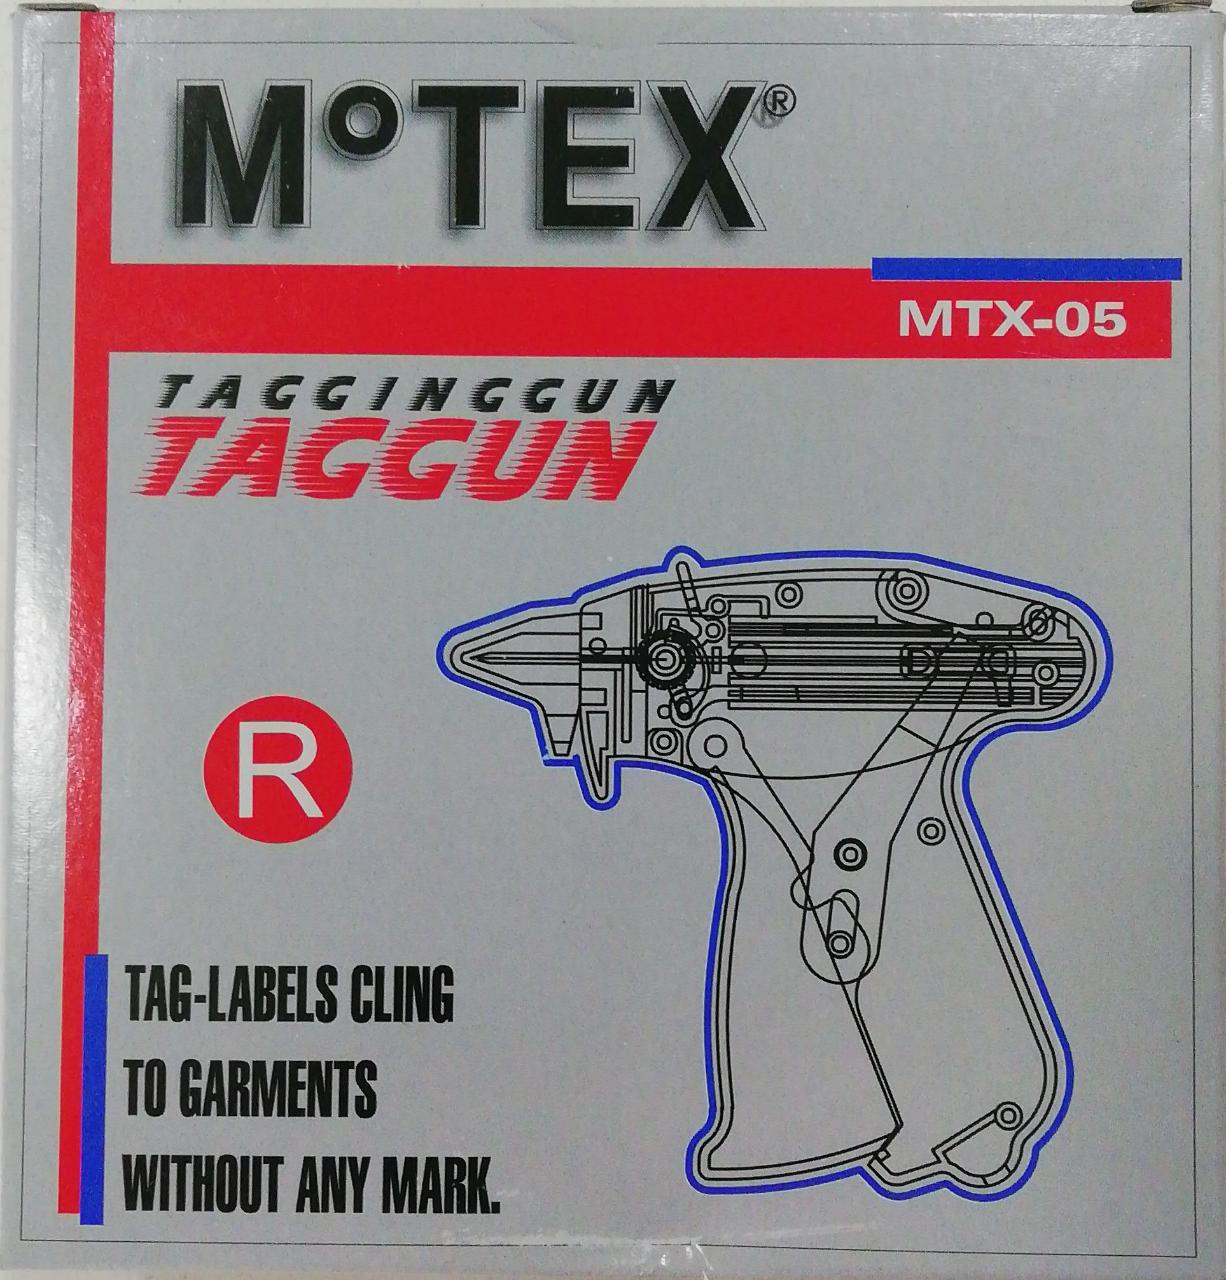 Precintadora mtx-05 gun regular